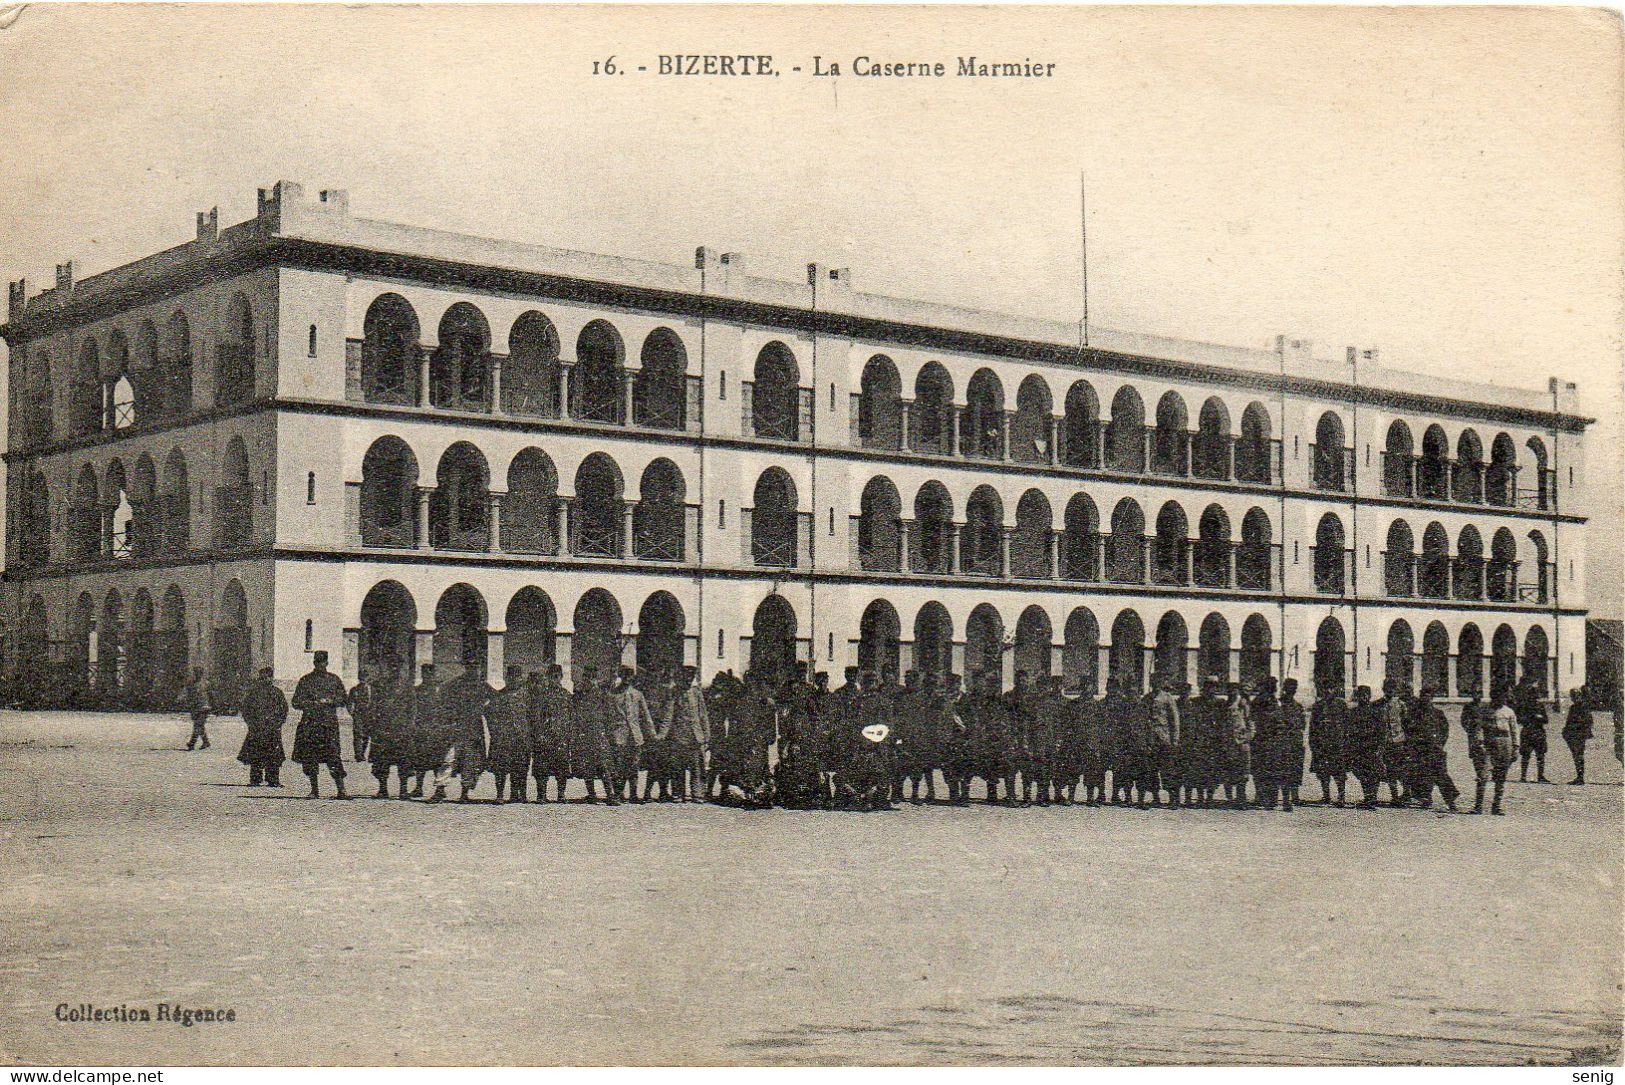 TUNISIE - BIZERTE - 16 - La Caserne Marmier - Collection Régence. Leroux Alger. - Tunisie